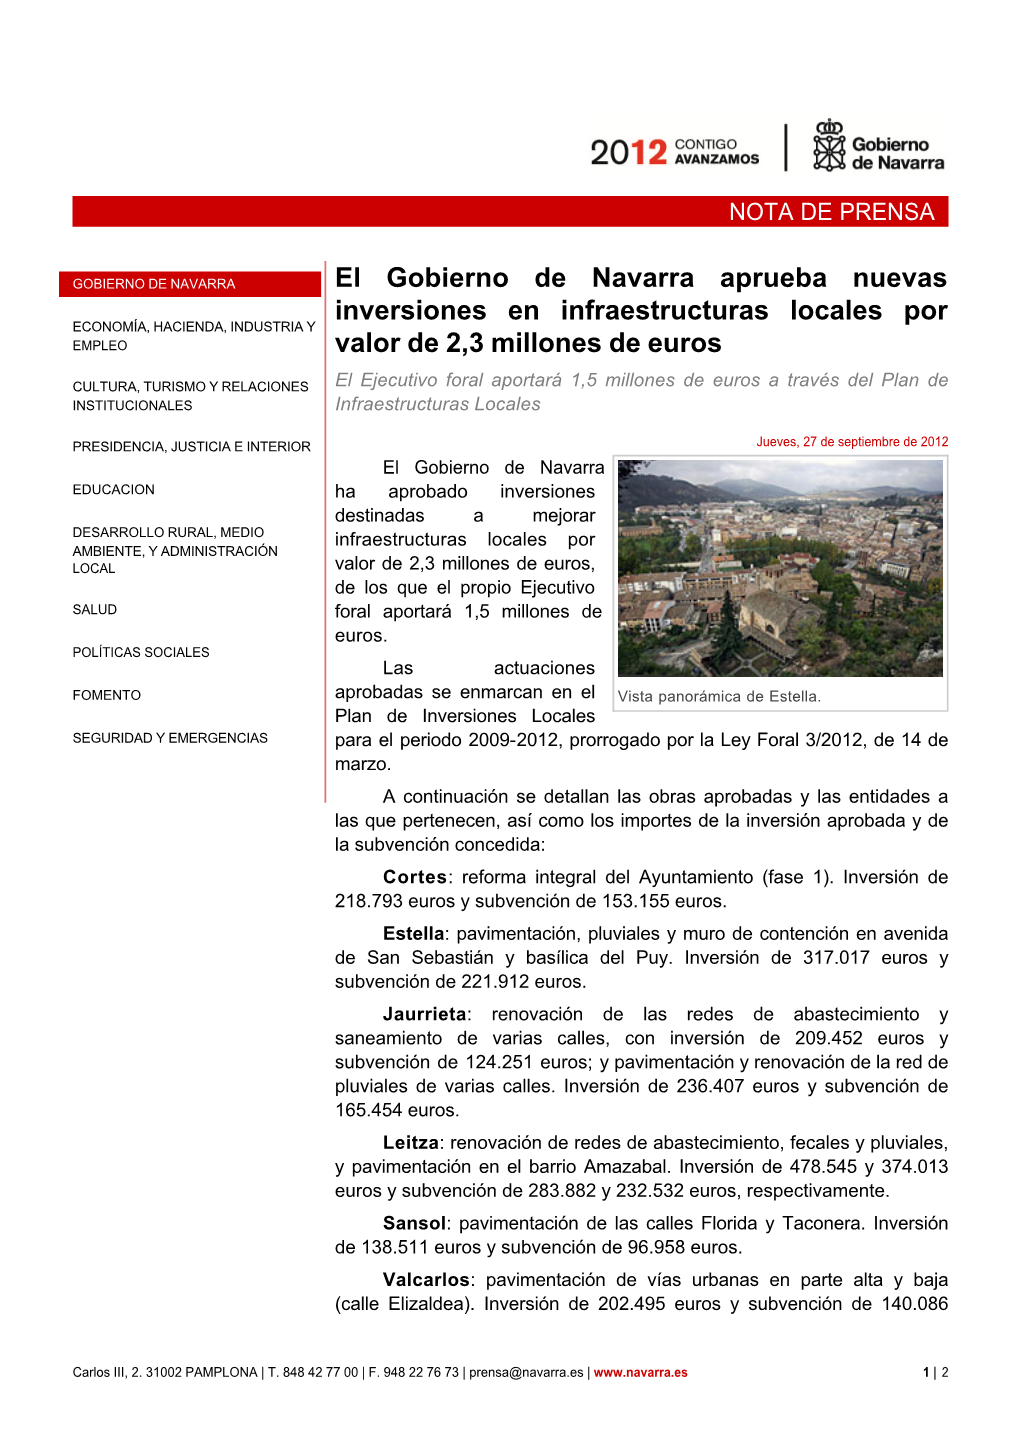 El Gobierno De Navarra Aprueba Nuevas Inversiones En Infraestructuras Locales Por Valor De 2,3 Millones De Euros